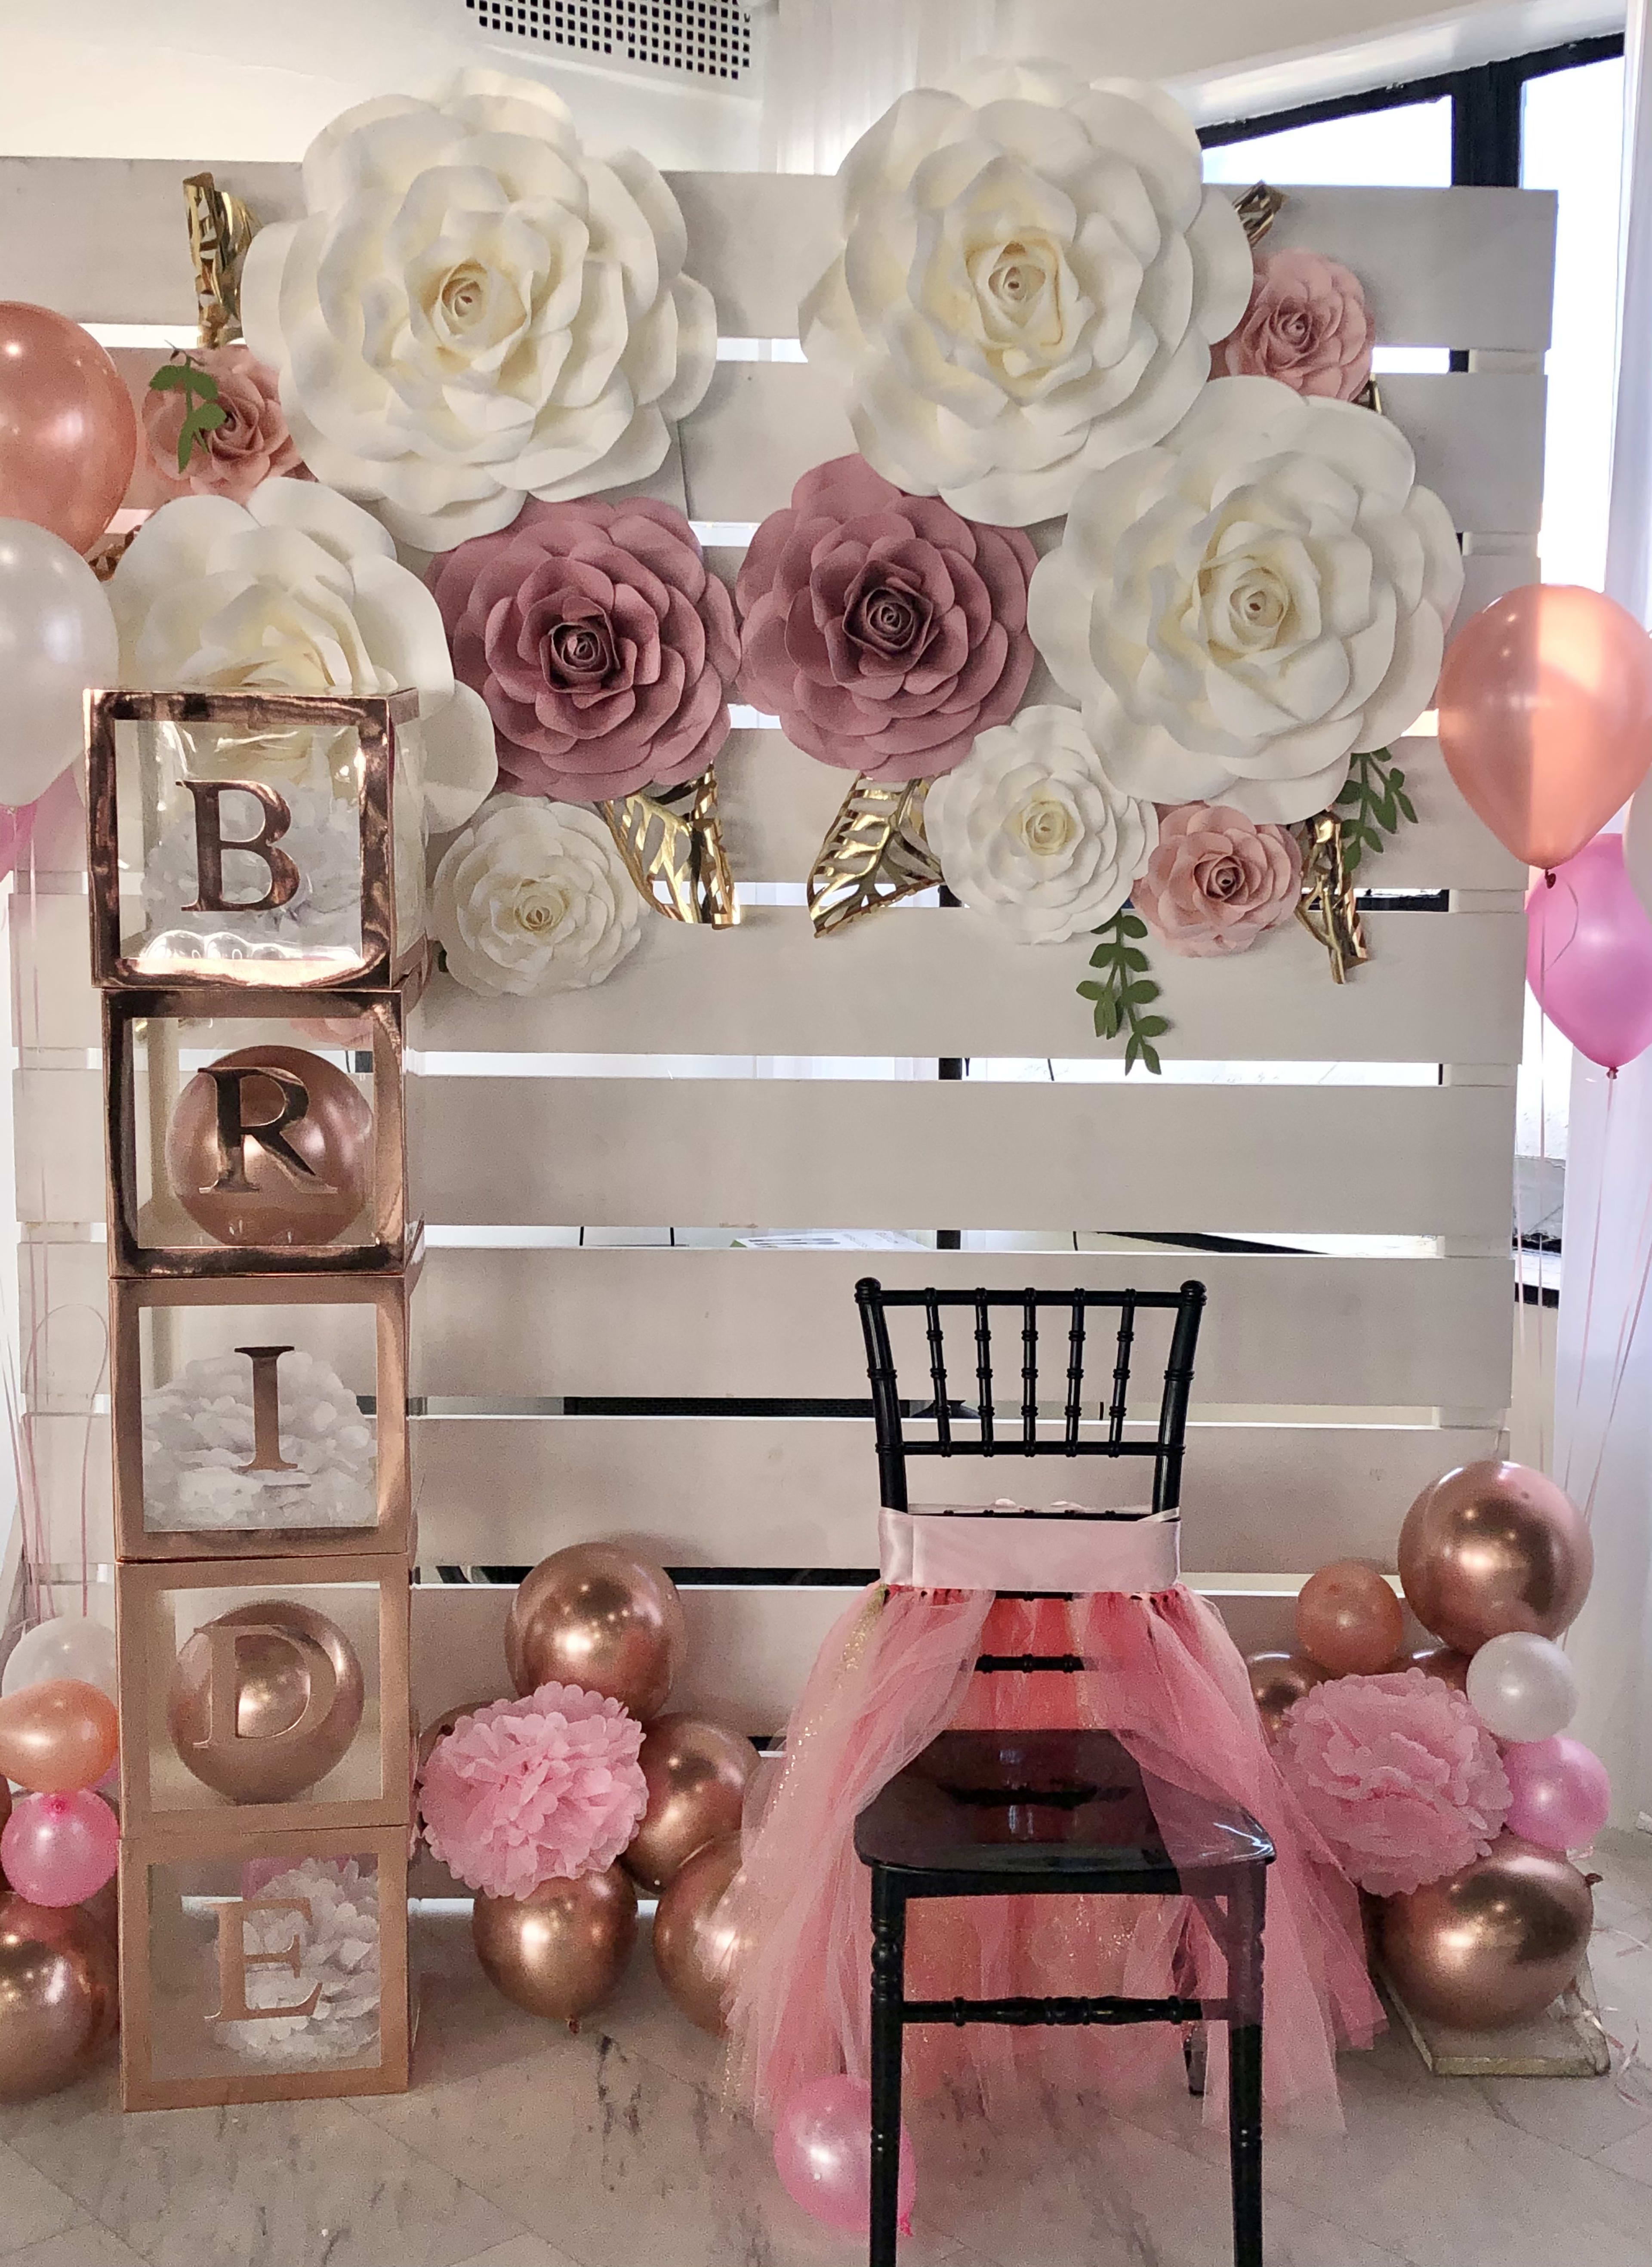 Una mesa de jardín adornada con globos rosas y blancos y una silla para una despedida de soltera.